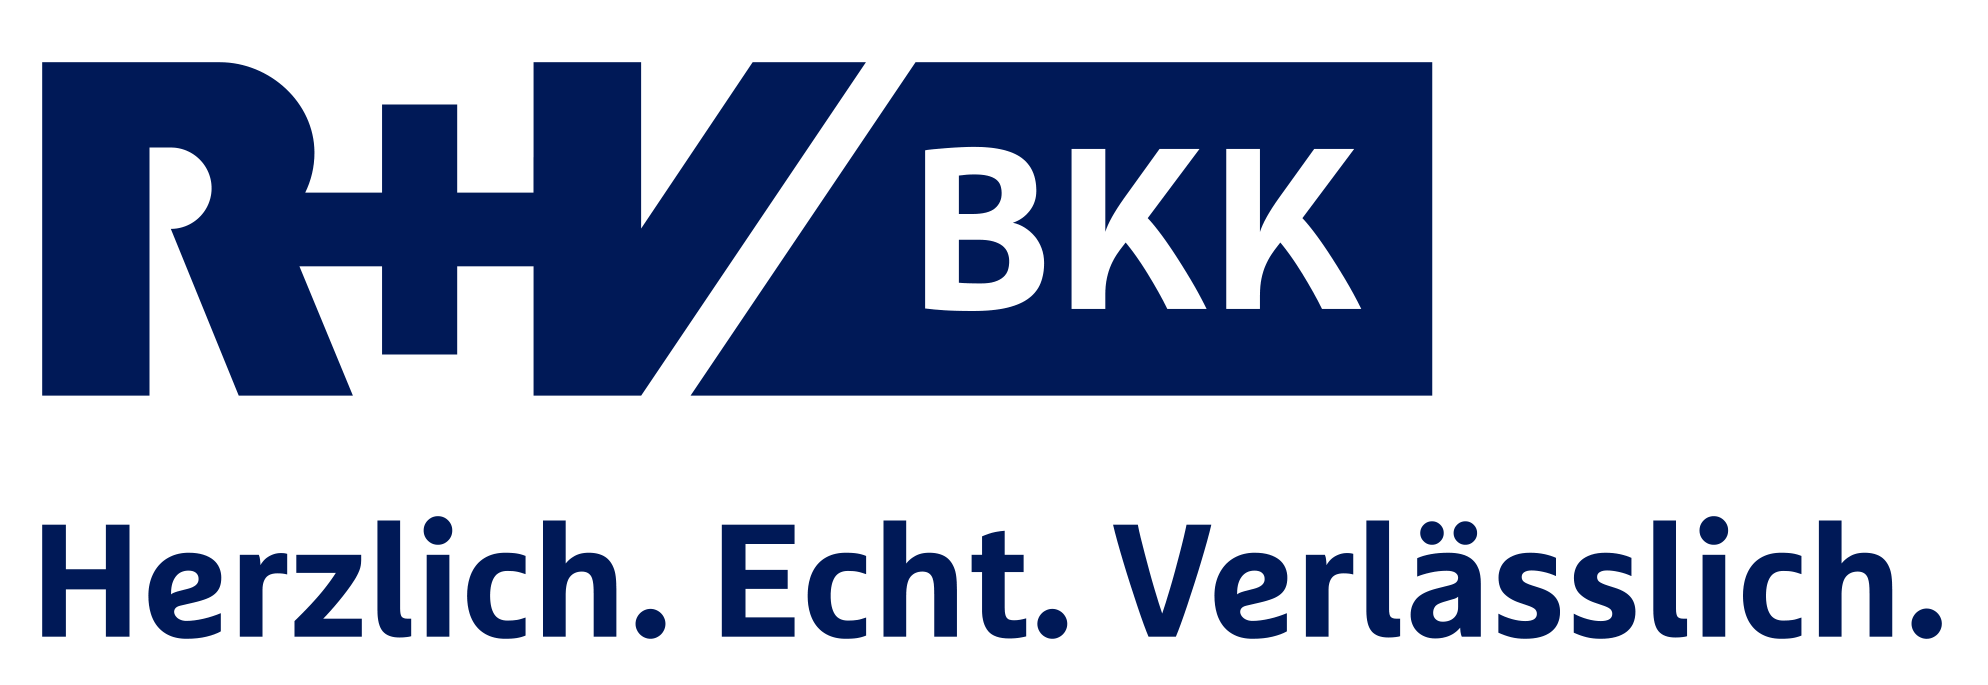 ruv-bkk-logo-mit-claim